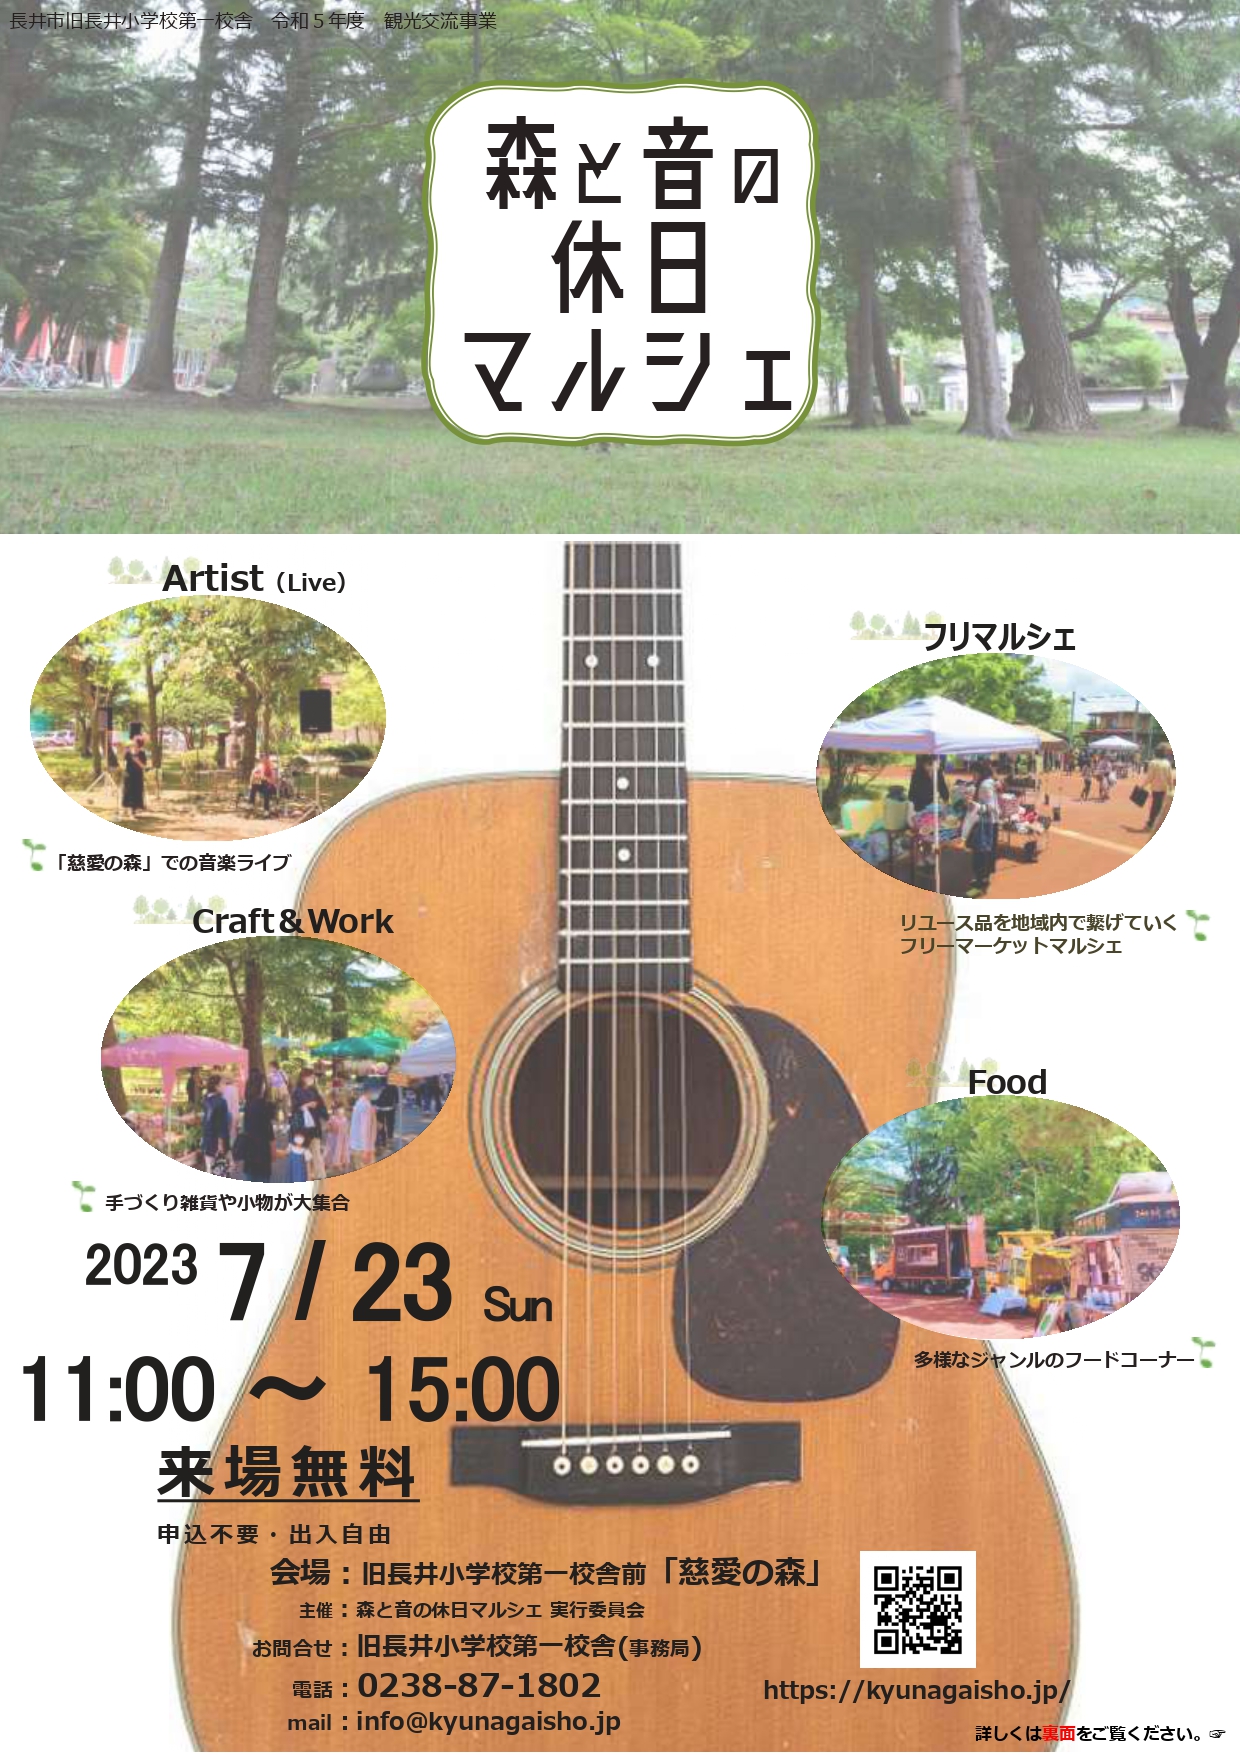 【山形イベント情報7/23】「森と音の休日マルシェ」開催（長井市）